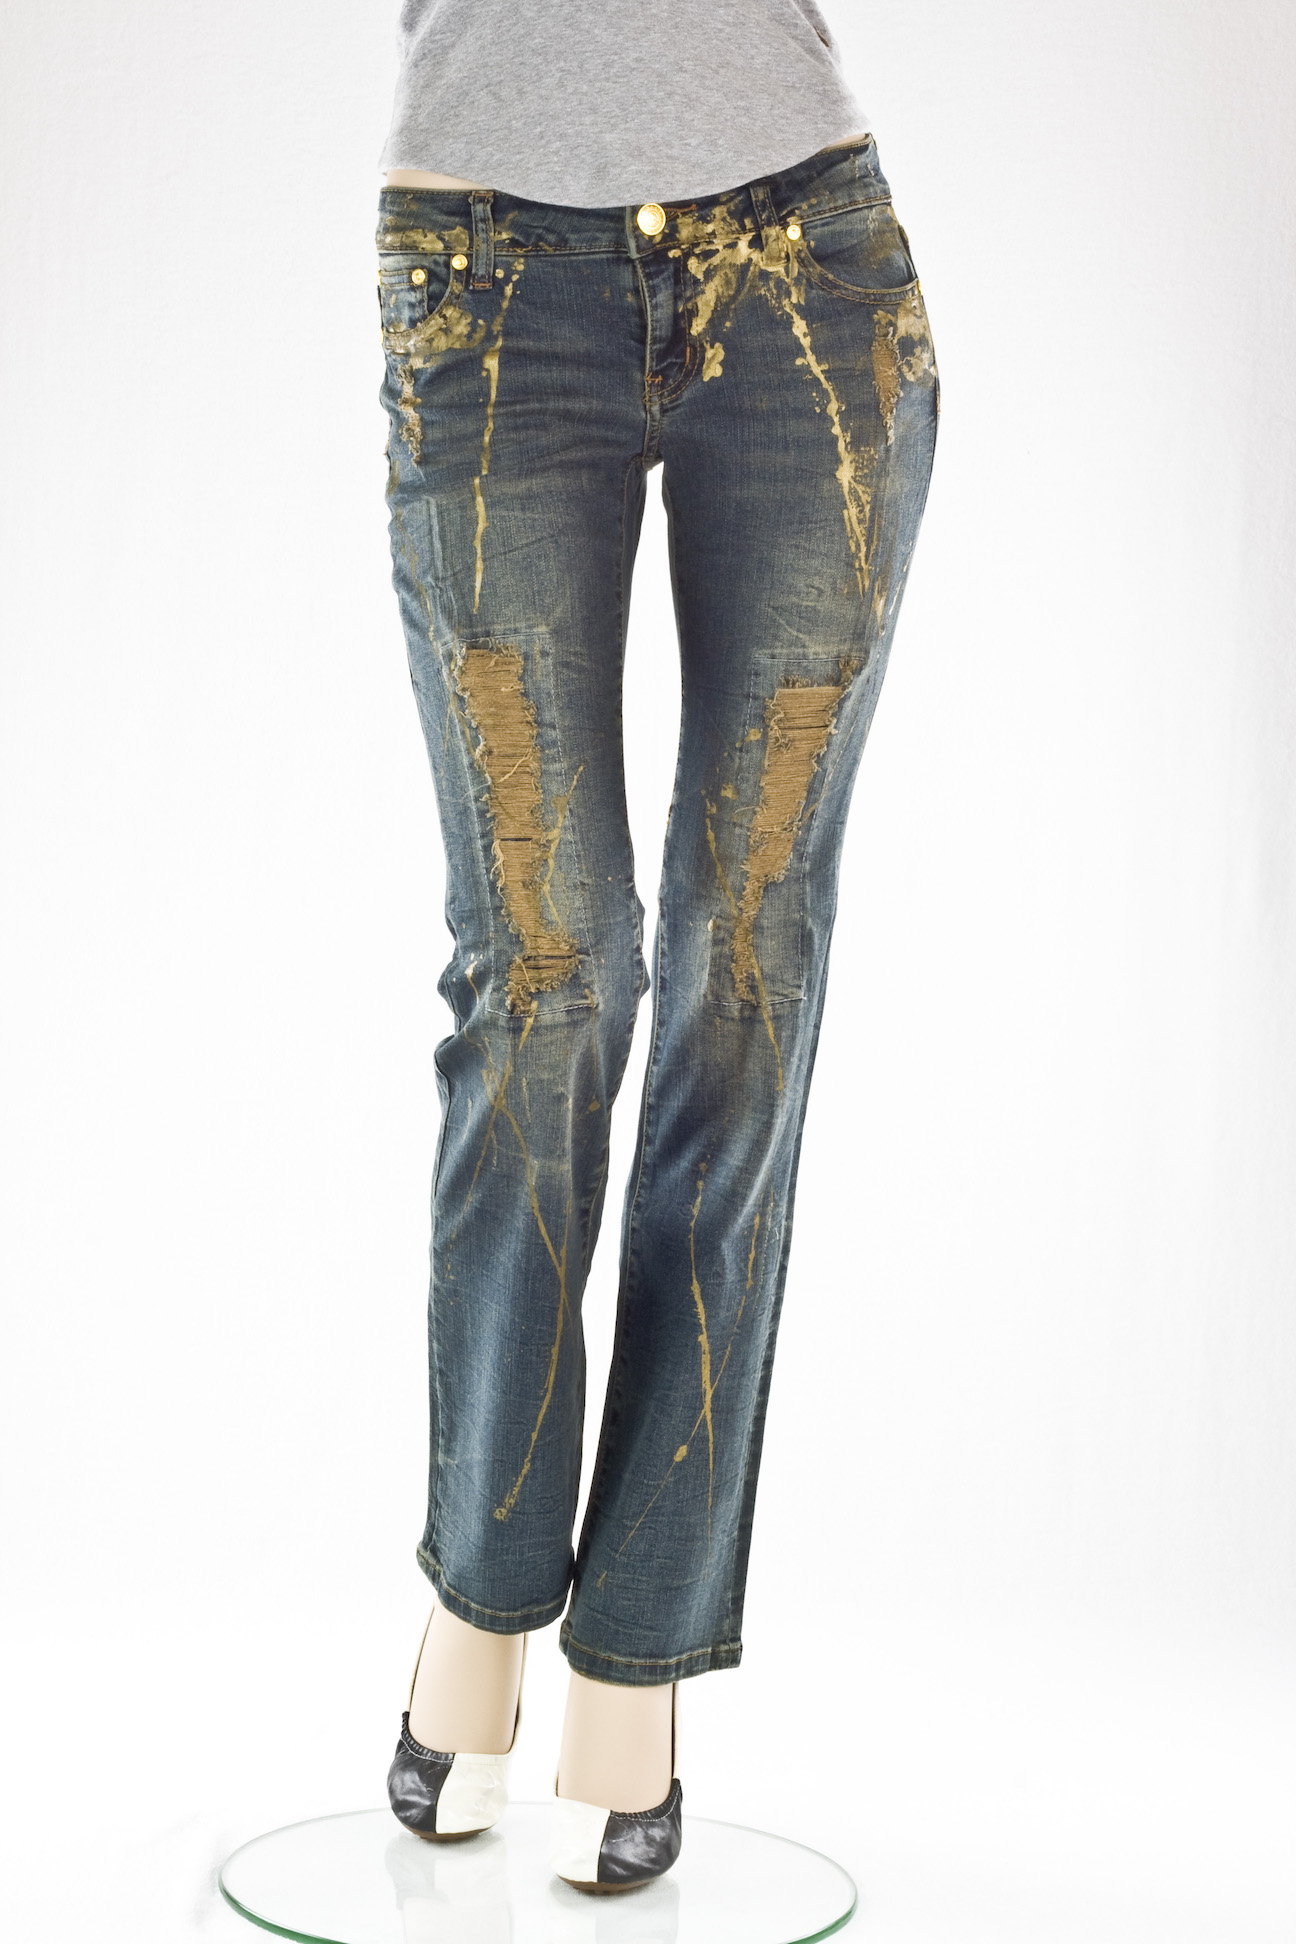 джинсы женские VO Jeans LA винтажные "Буткат" Desrtoyed Bootcut jeans vintage